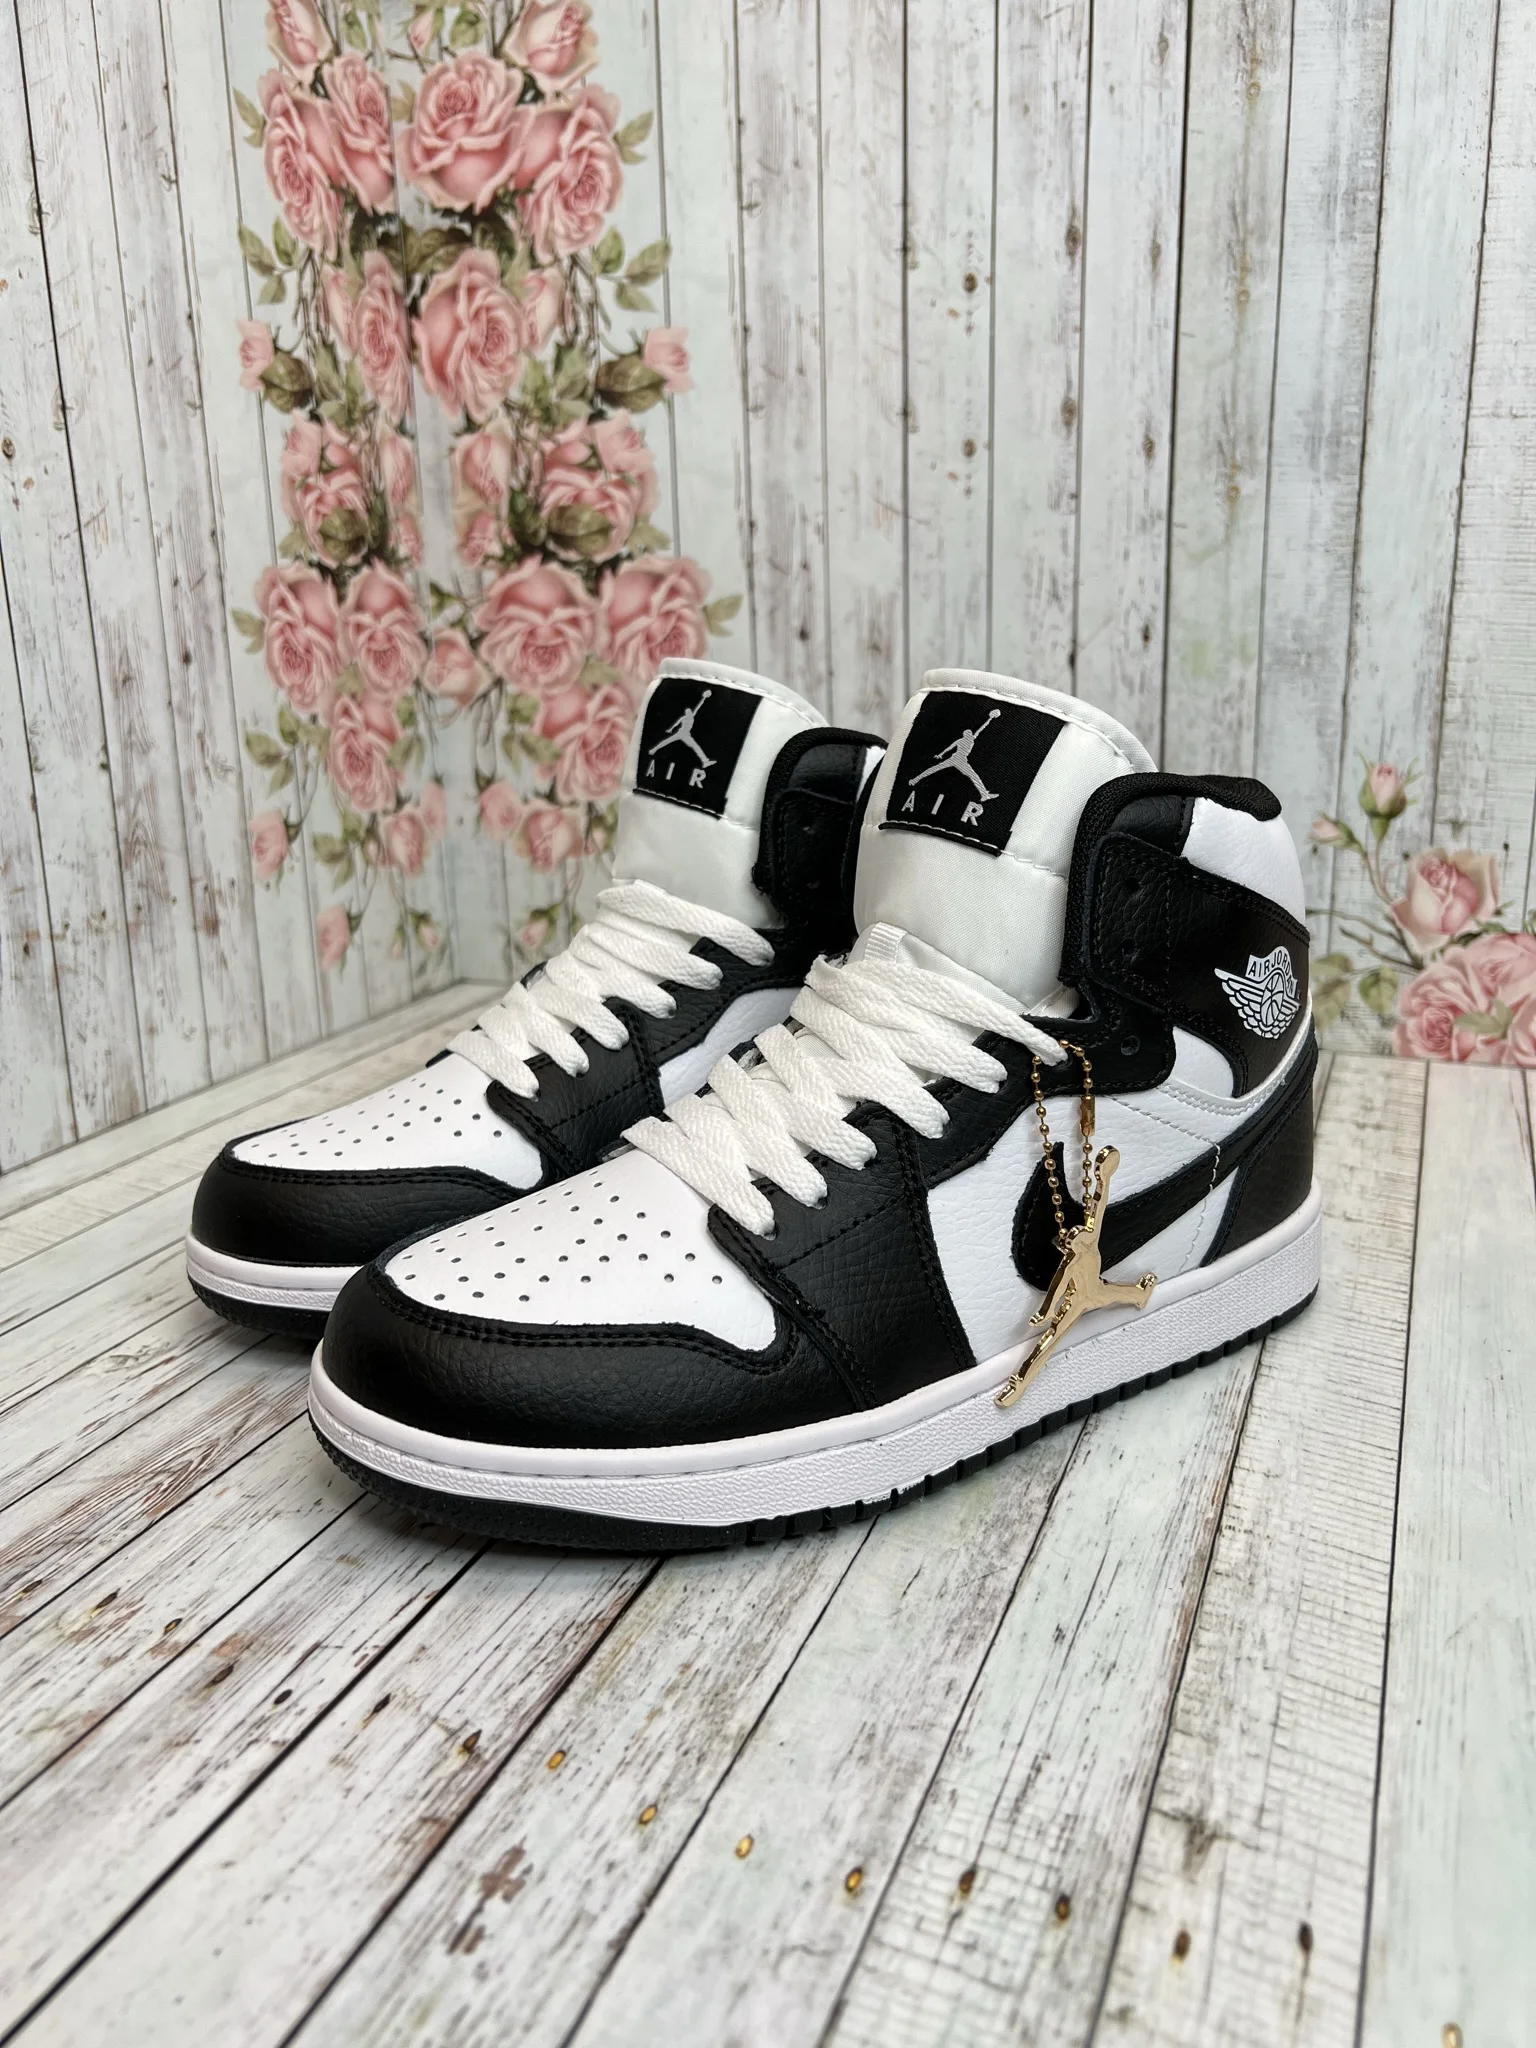 Кроссовки Nike AIR Jordan (Джордан) чёрные | AliExpress